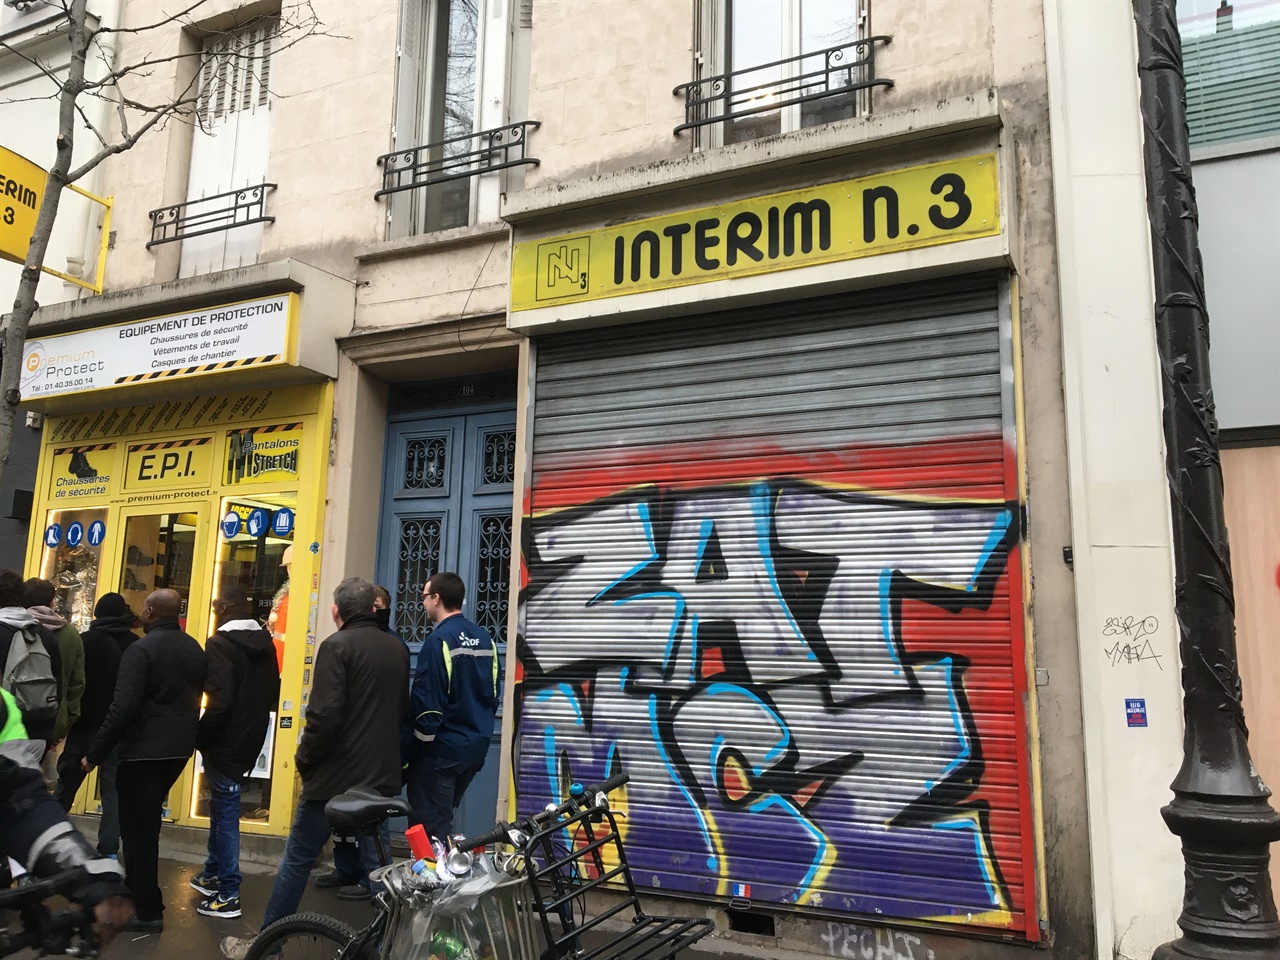 2020년 1월9일 파리에서 열린 연금개혁 반대 시위 현장. 안전을 염려해 문을 닫은 상점들이 많이 눈에 띄었다. 